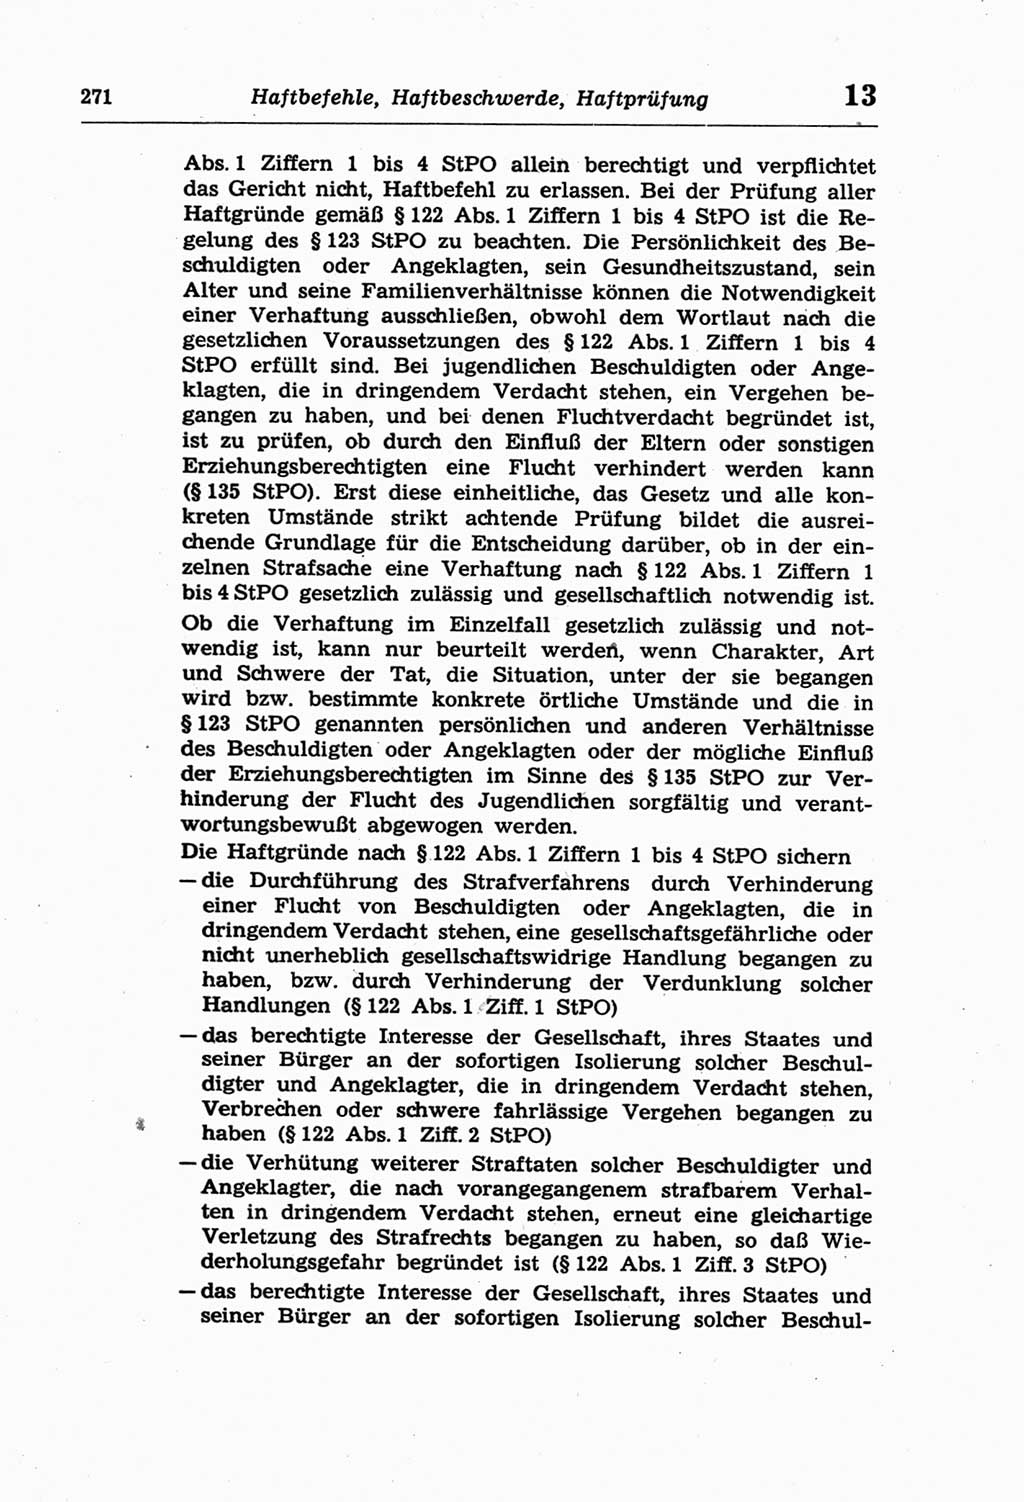 Strafprozeßordnung (StPO) der Deutschen Demokratischen Republik (DDR) und angrenzende Gesetze und Bestimmungen 1968, Seite 271 (StPO Ges. Bstgn. DDR 1968, S. 271)